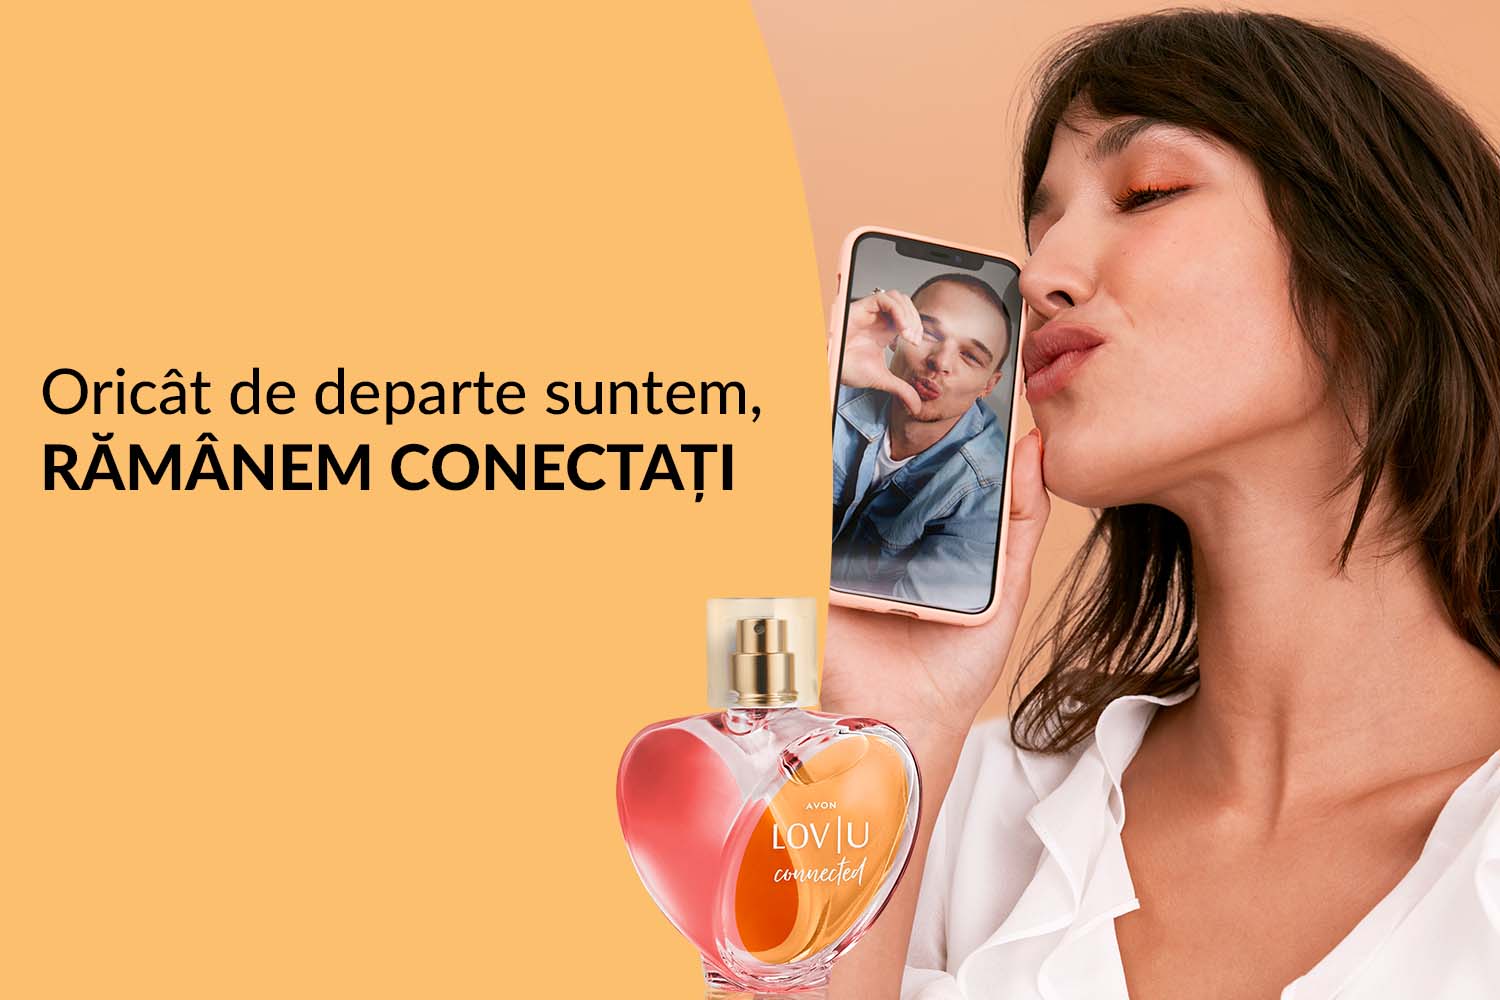  LOV|U Connected - parfumul care unește inimi și deschide dialogul despre iubirea responsabilă